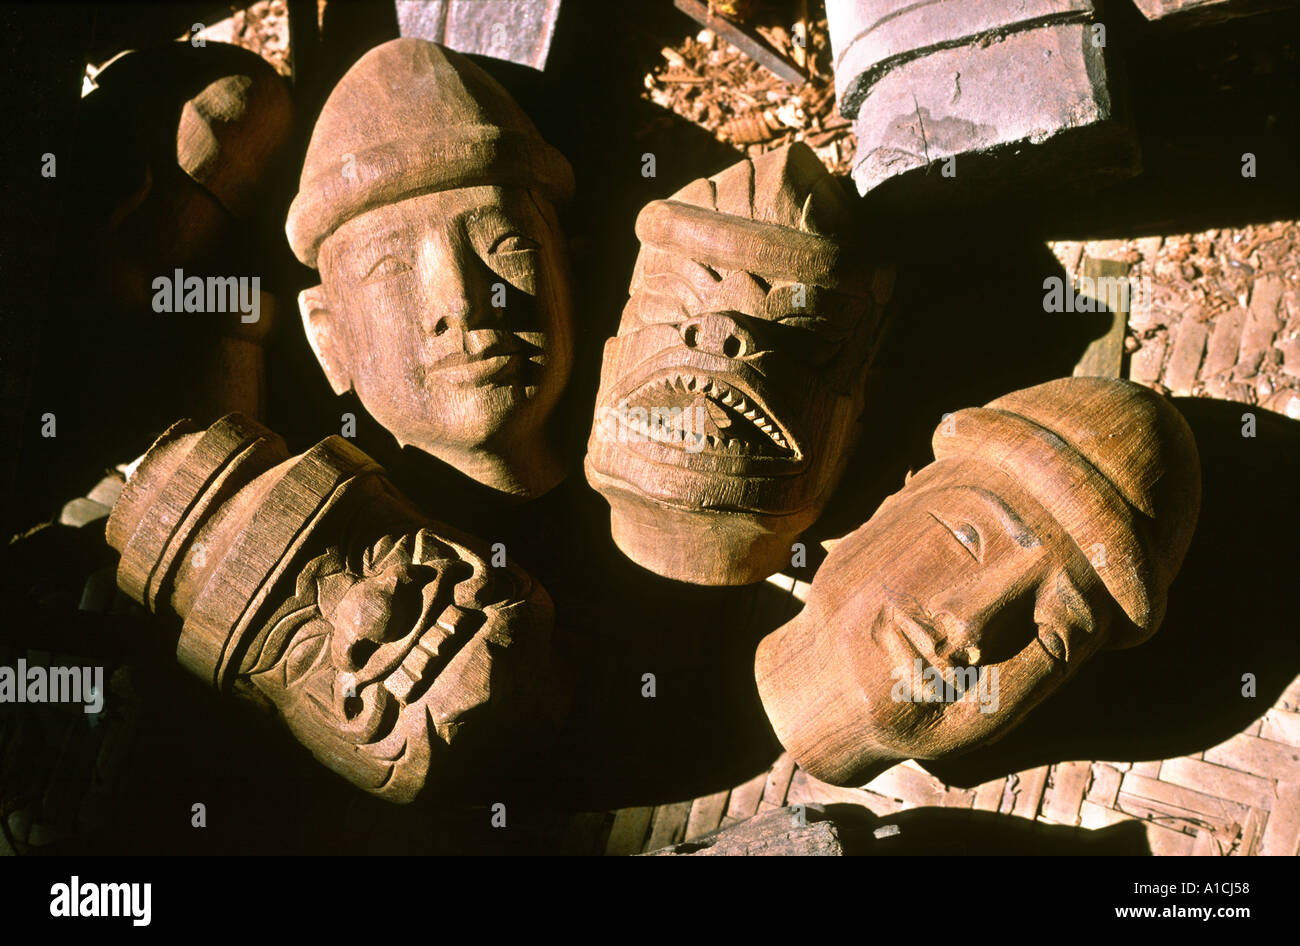 Myanmar Birmanie Mandalay marionnettes sculpture sur bois artisanat chefs en cours sculpté par Winn Myint Banque D'Images